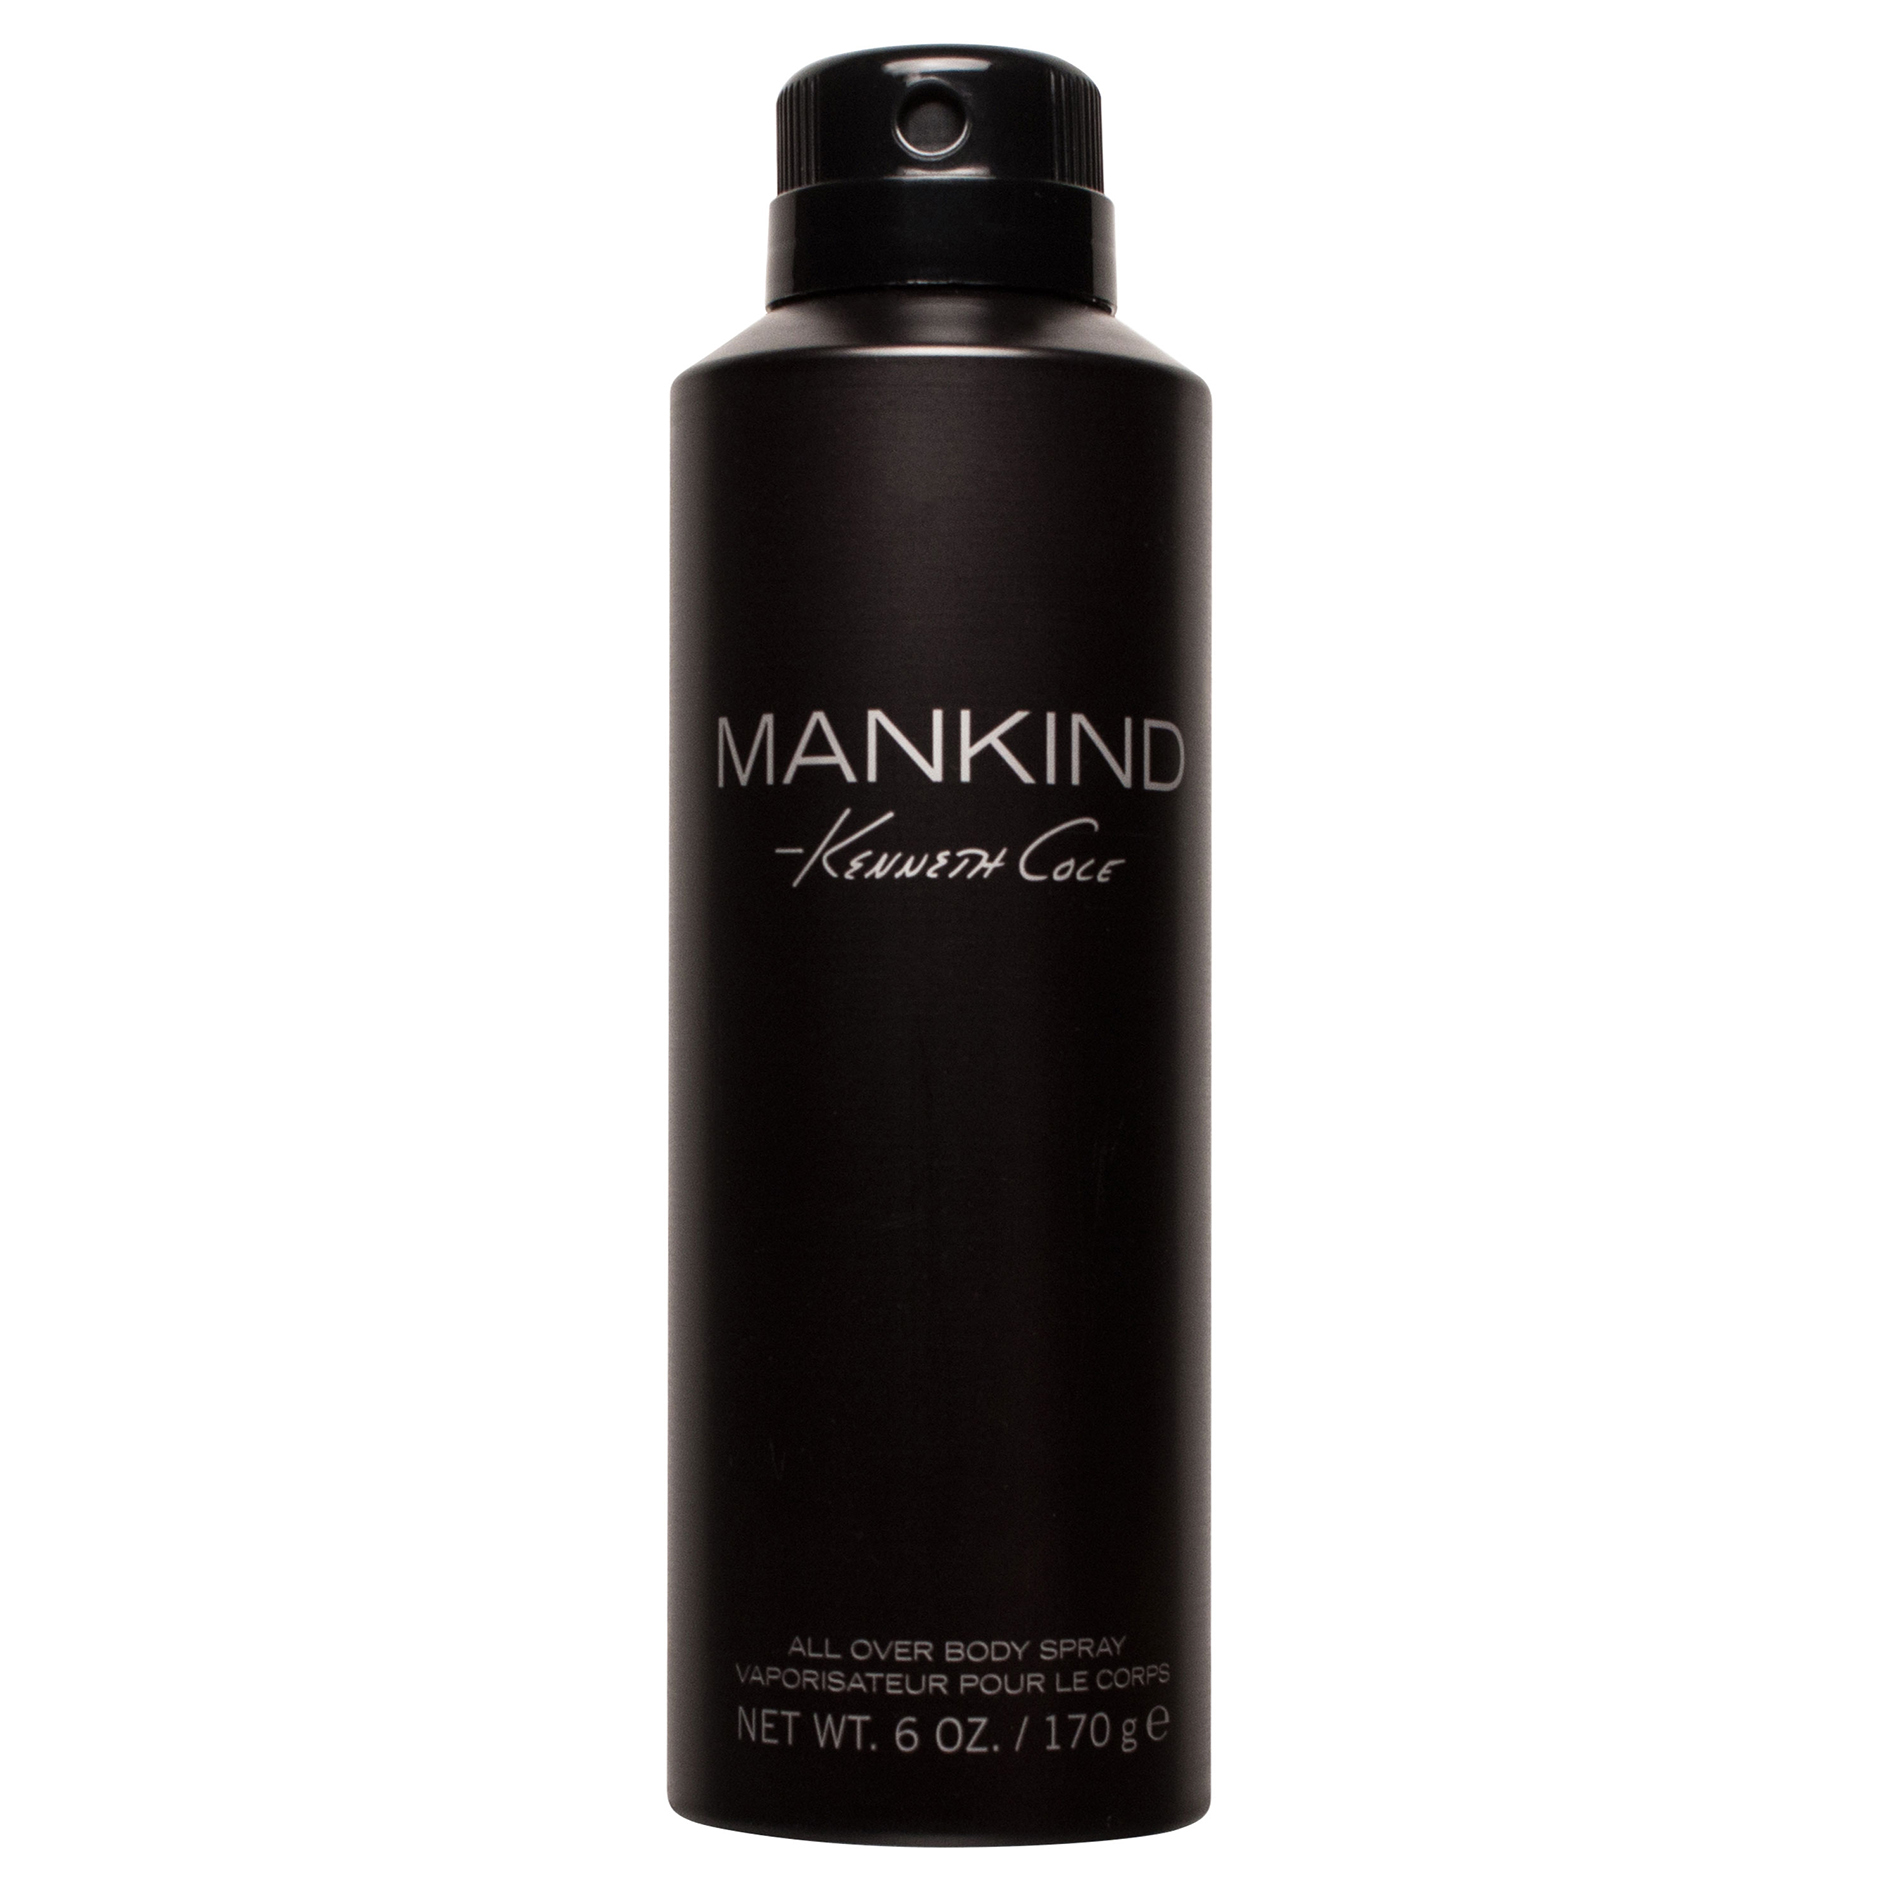 Kenneth Cole Mankind Body Spray for Men, 6 Fl. Oz.